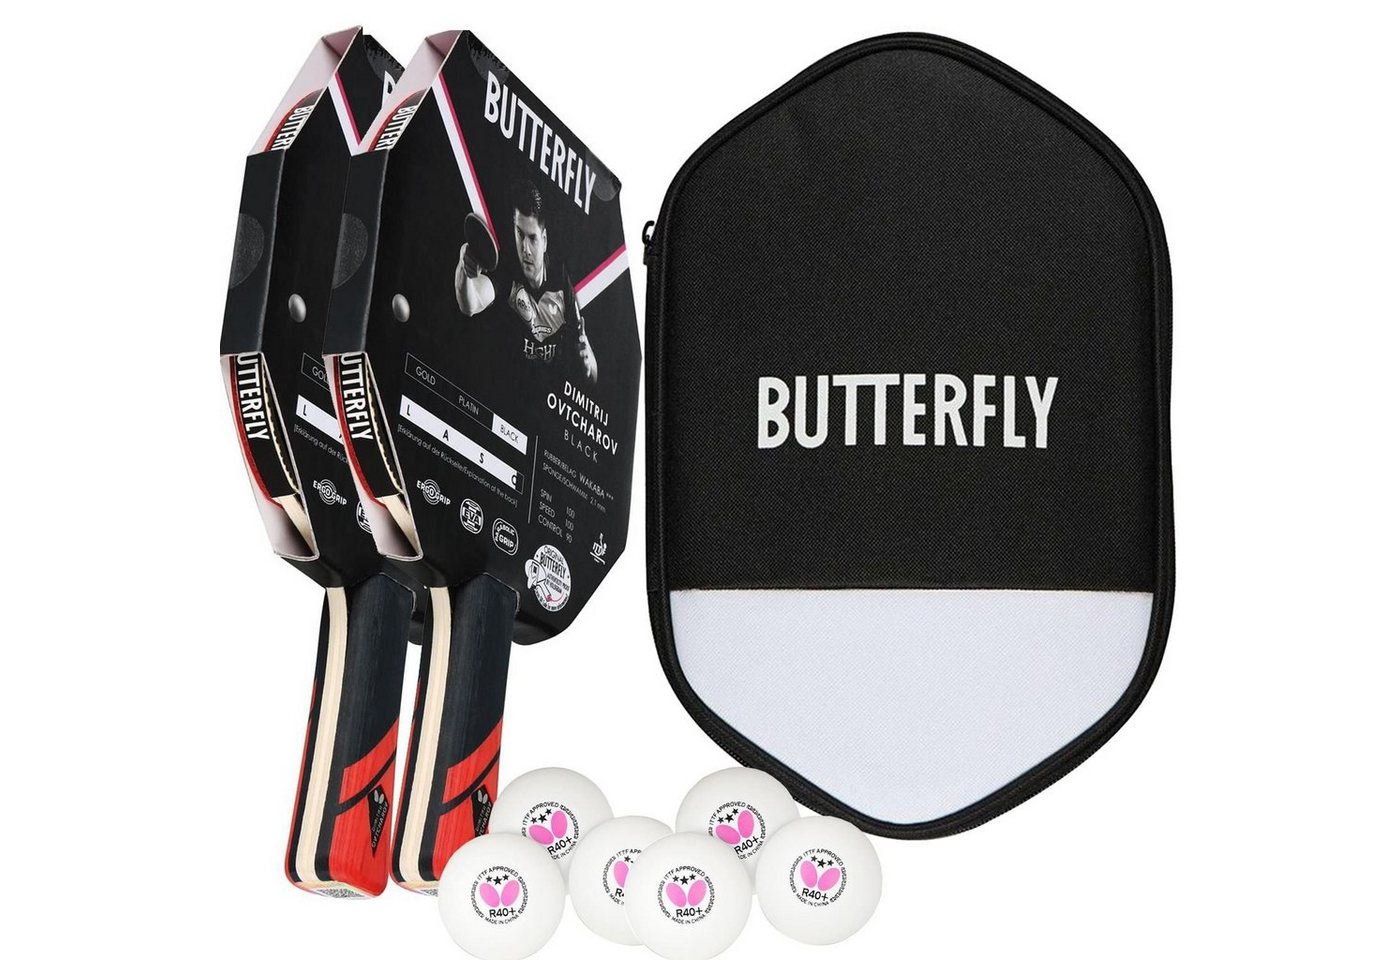 Butterfly Tischtennisschläger 2x Dimitrij Ovtcharov Black + CC2 + Bälle, Tischtennis Schläger Set Tischtennisset Table Tennis Bat Racket von Butterfly